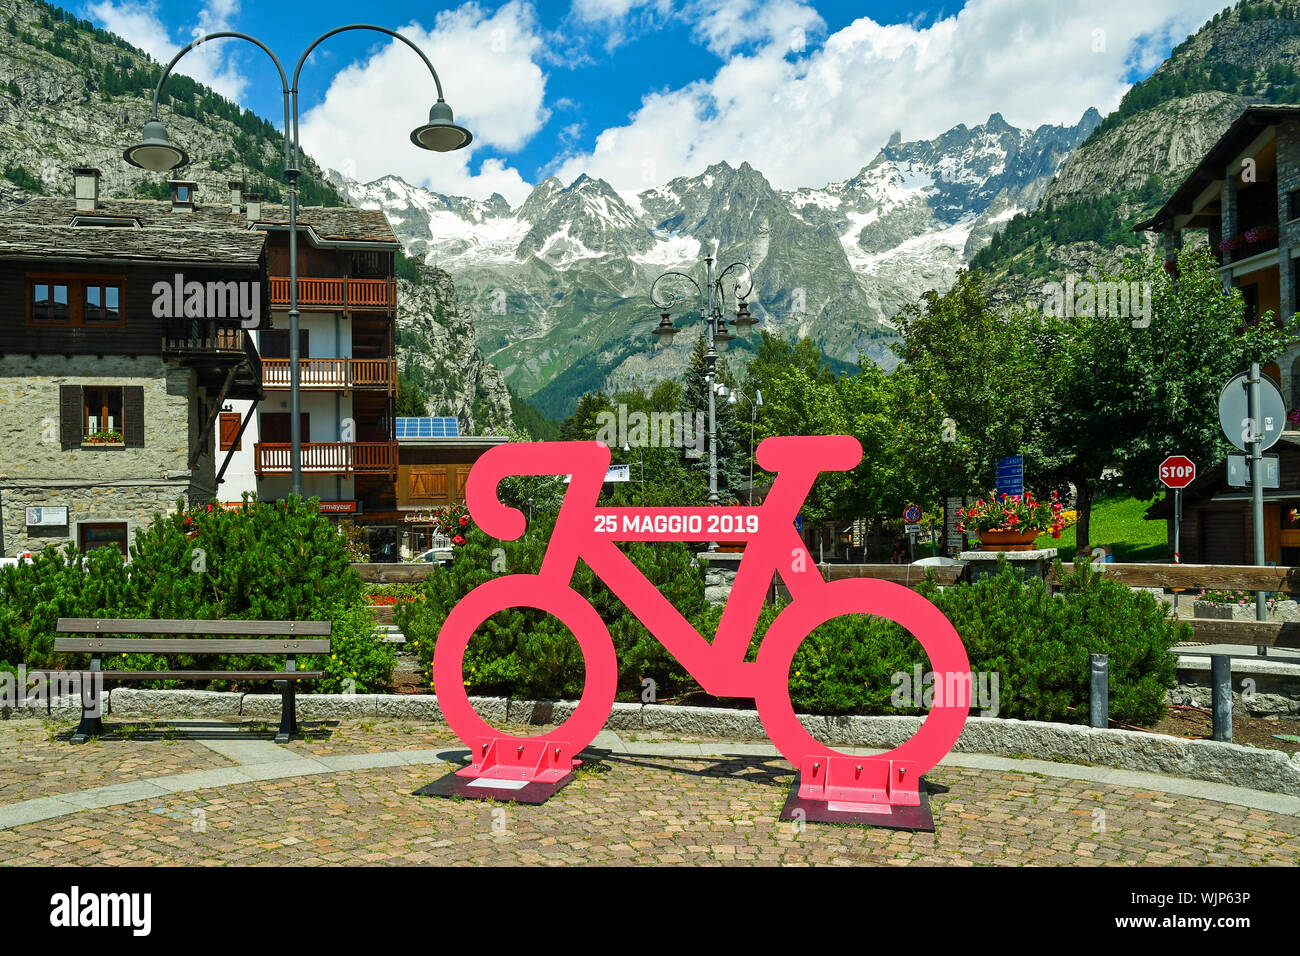 Un cycle de la rose commémorative 14e étape du Giro d'Italie que traversa Courmayeur le 25 mai 2019 et sur le massif du Mont-Blanc, de la vallée d'aoste, Italie Banque D'Images